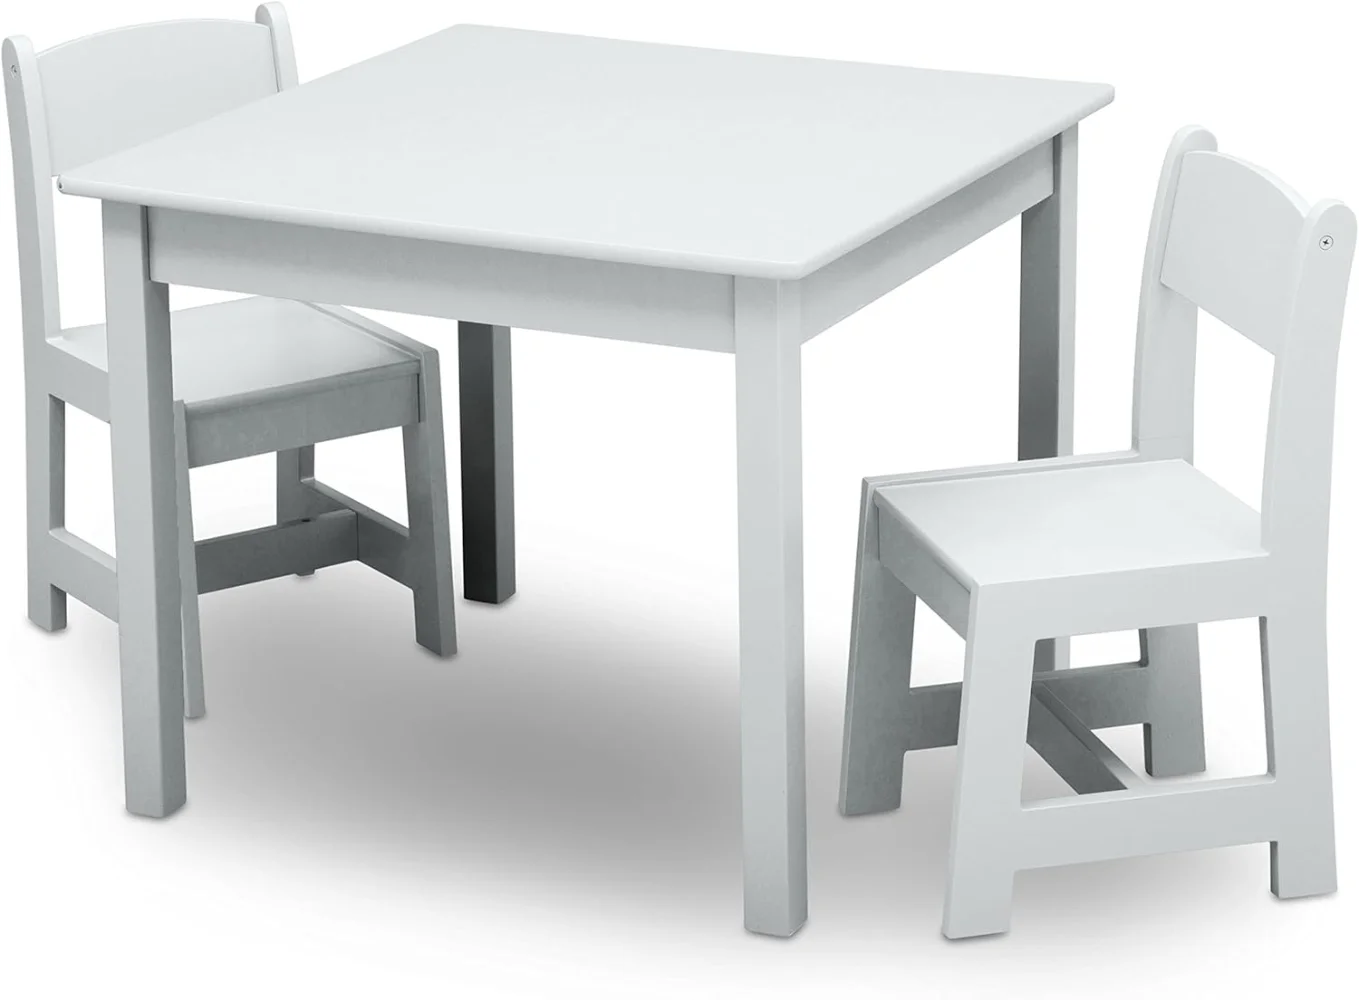 MySize Set tavolo e sedia in legno per bambini (2 sedie incluse)-ideale per arti e mestieri, Snack Time, altro-certificato Greenguard Gold